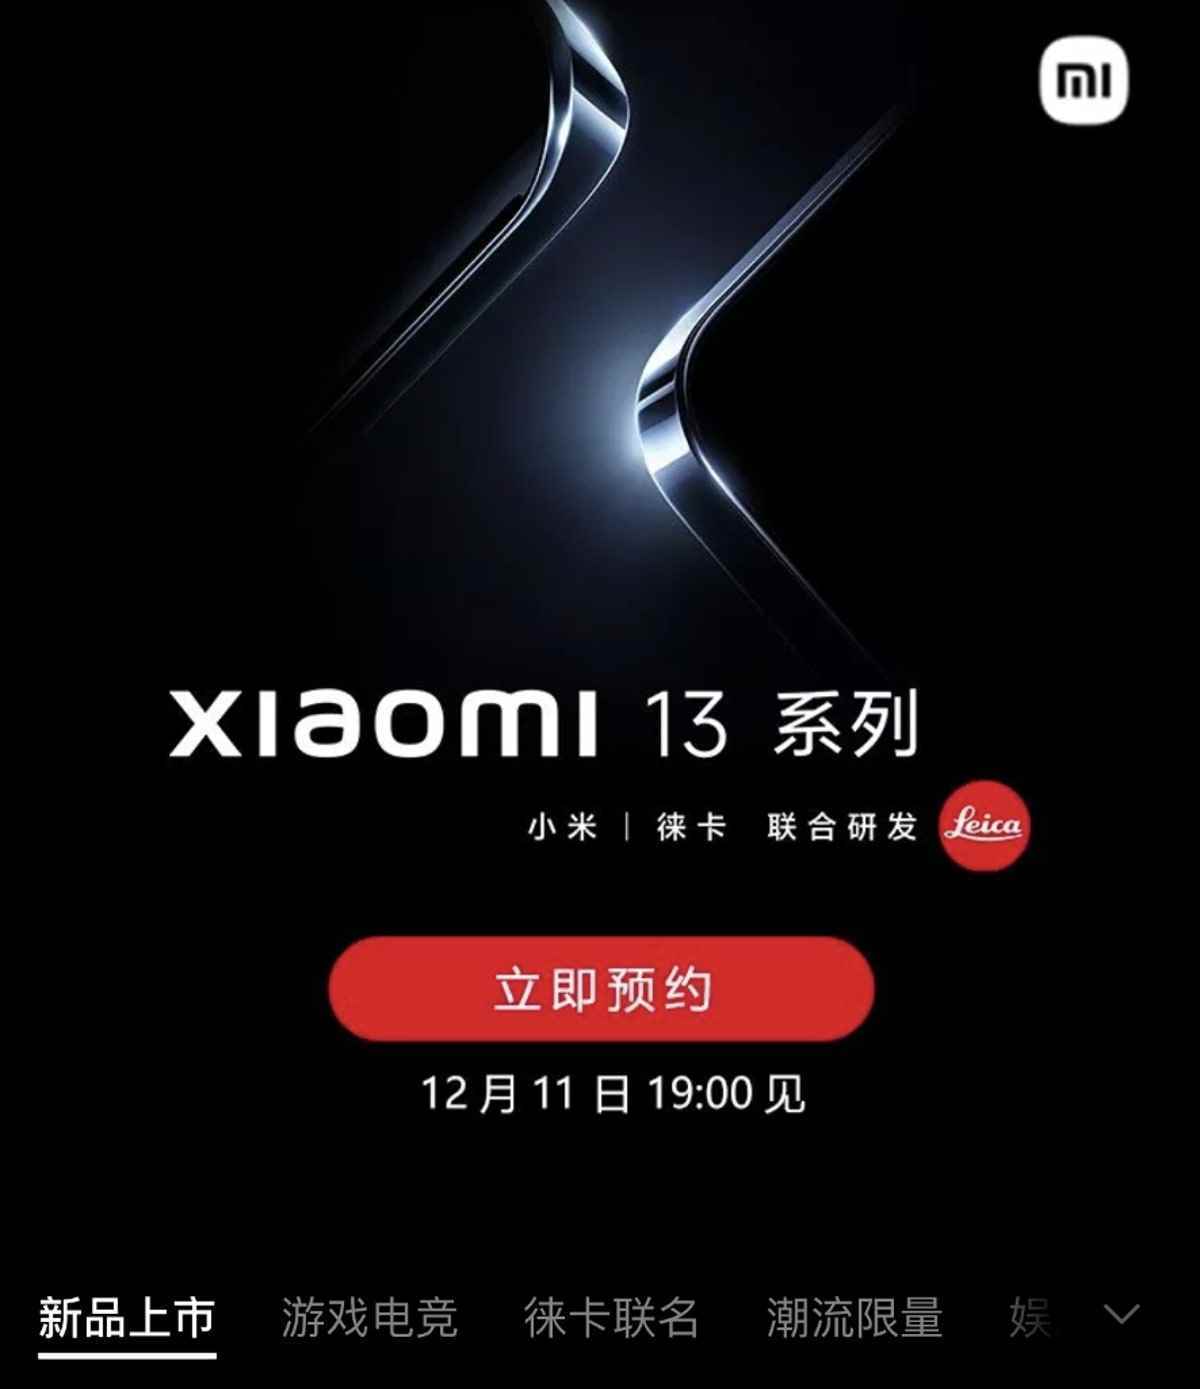 xiaomi 13 mi store neden laboratuvar weibo xiaomi_13_launch_mi_store_why_lab_weibo